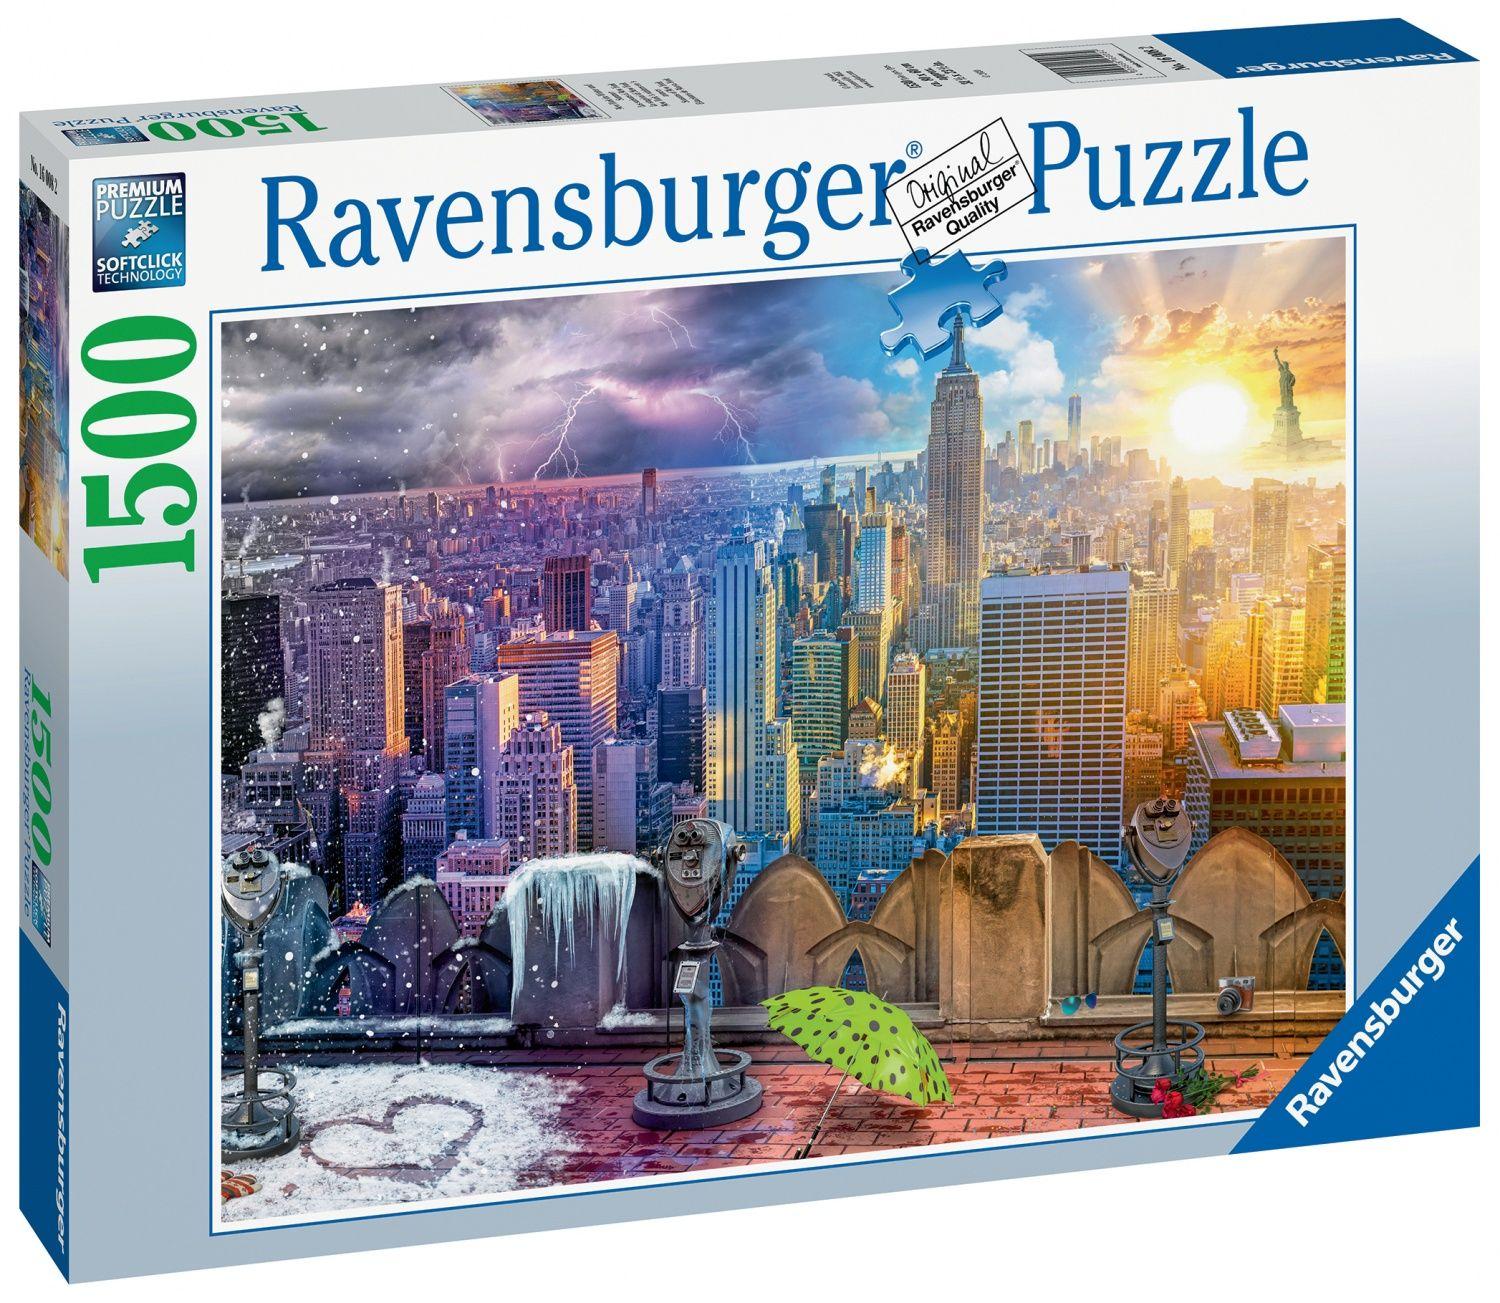 Ravensburger - puzzle adulte - puzzle 1500 p - le livre magique